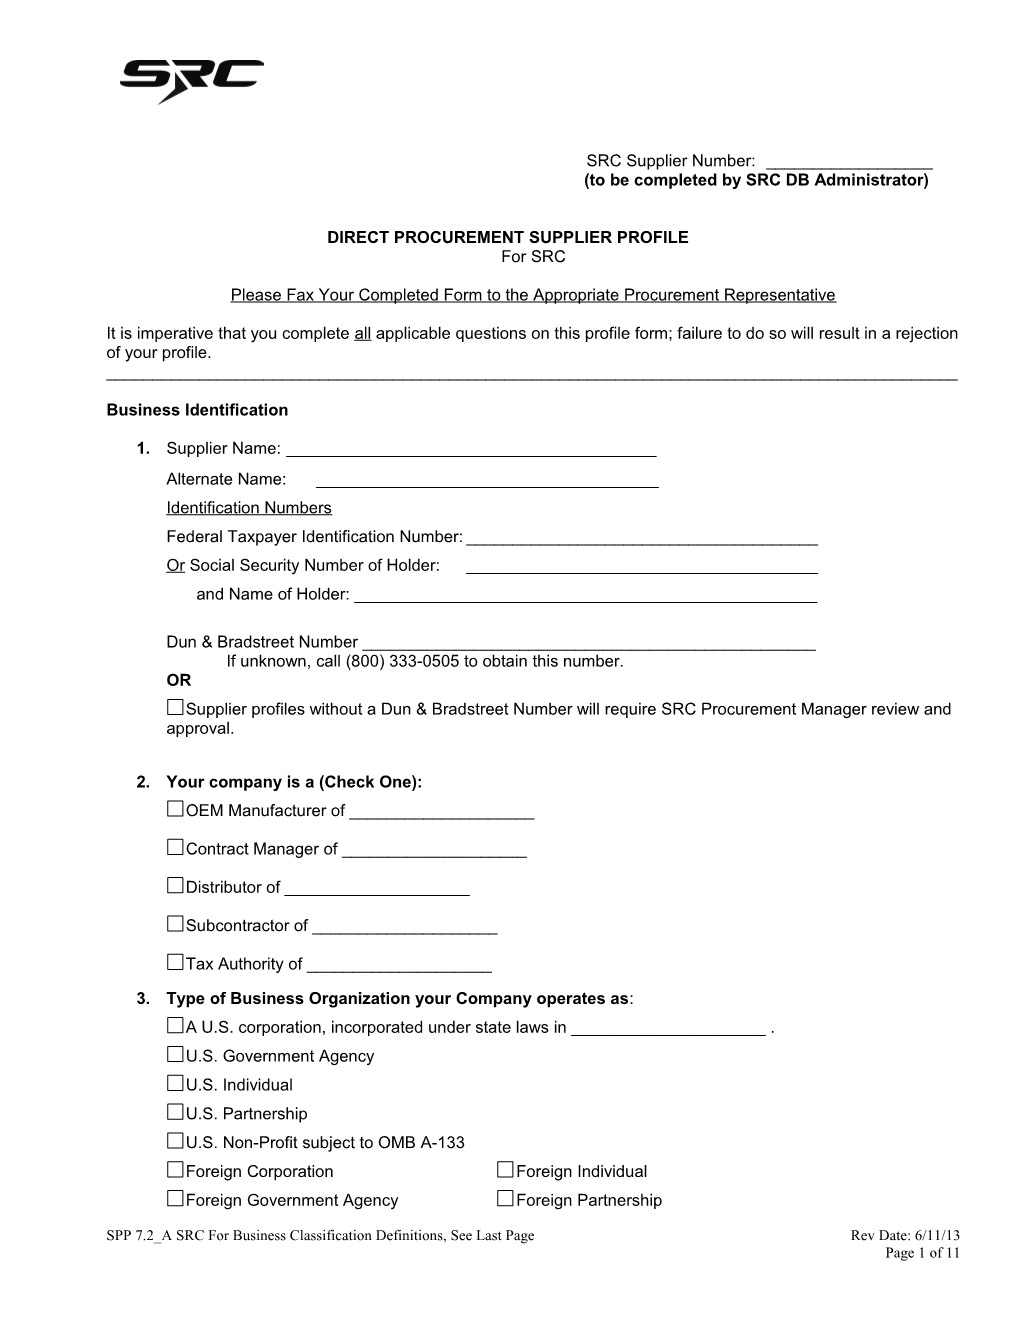 Direct Procurement Supplier Profile Form